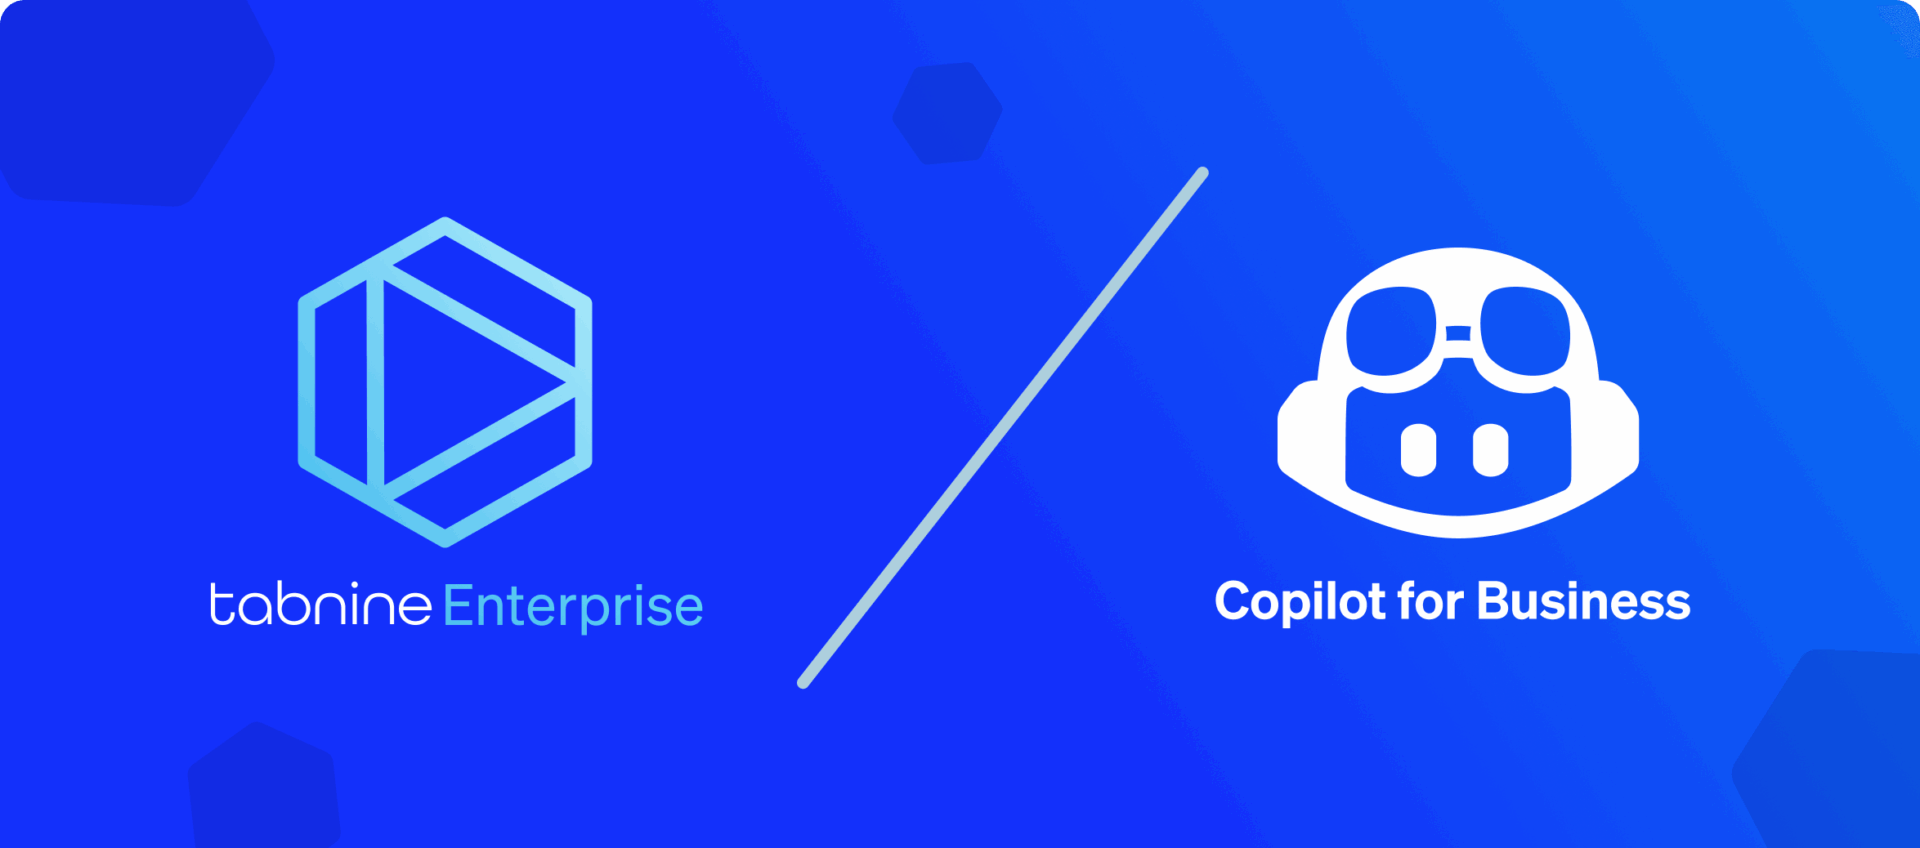 enterprise-vs-copilot.png